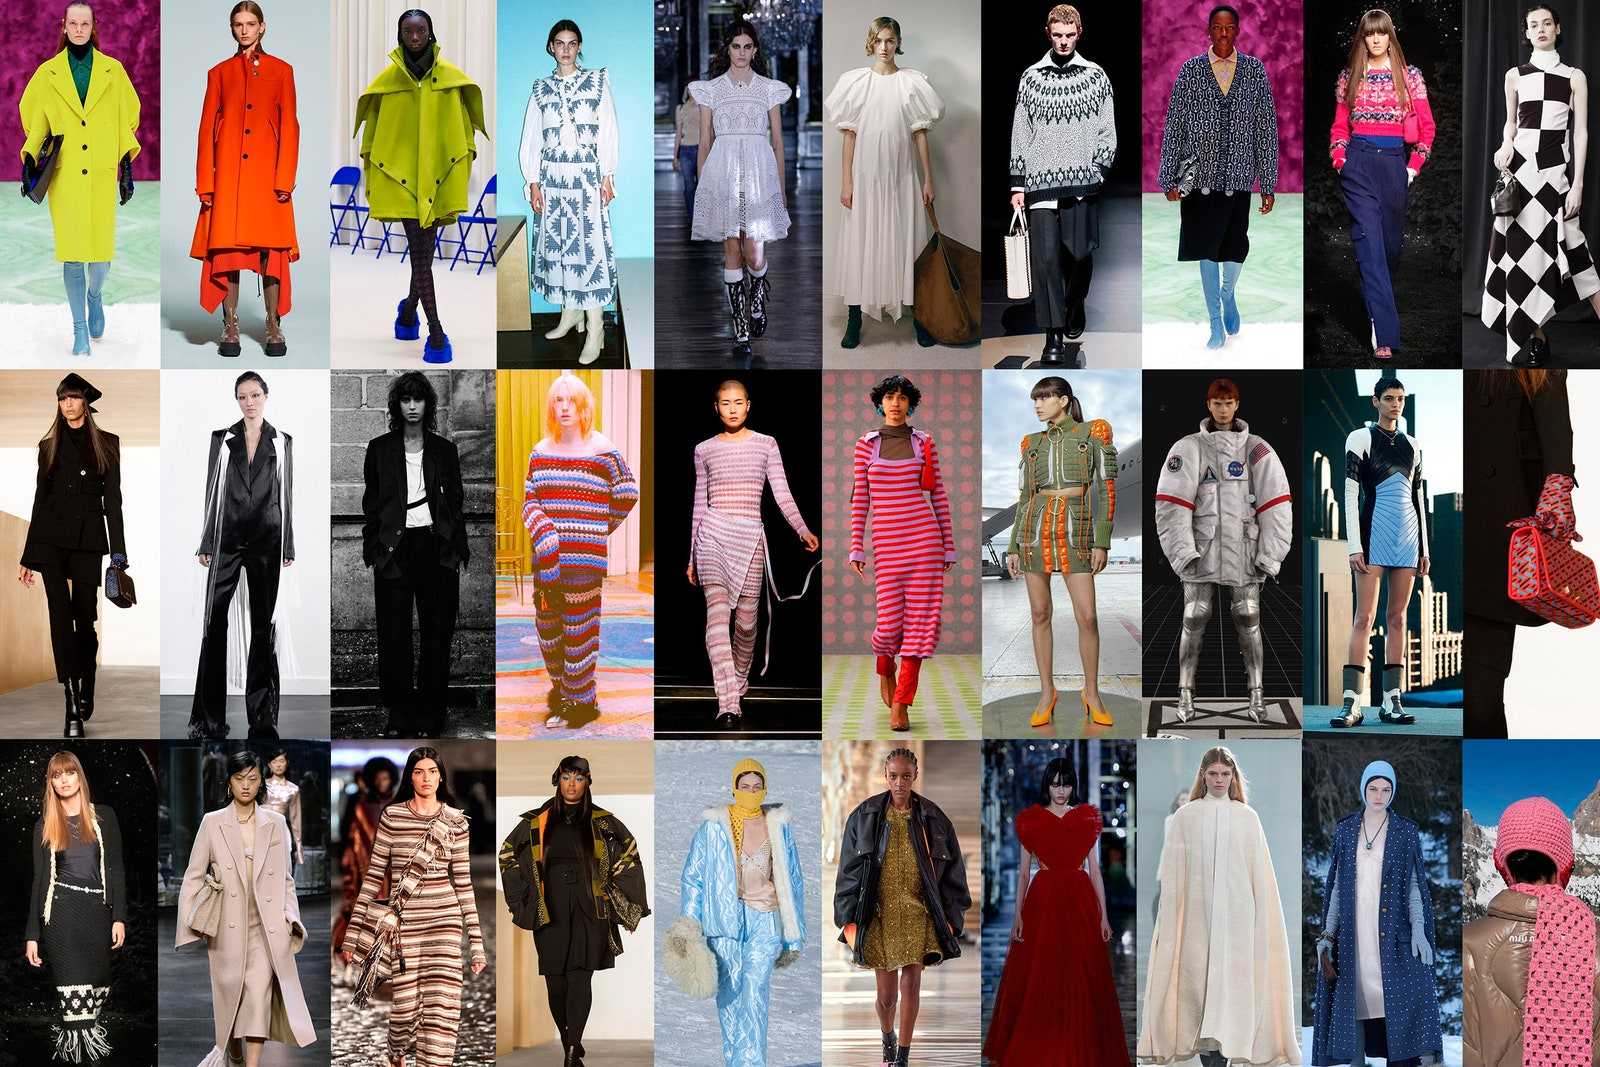 В коллекциях холодного сезона 2018-2019 много моделей одежды, где пуговицы выполняют не только функциональную роль, но и декоративную